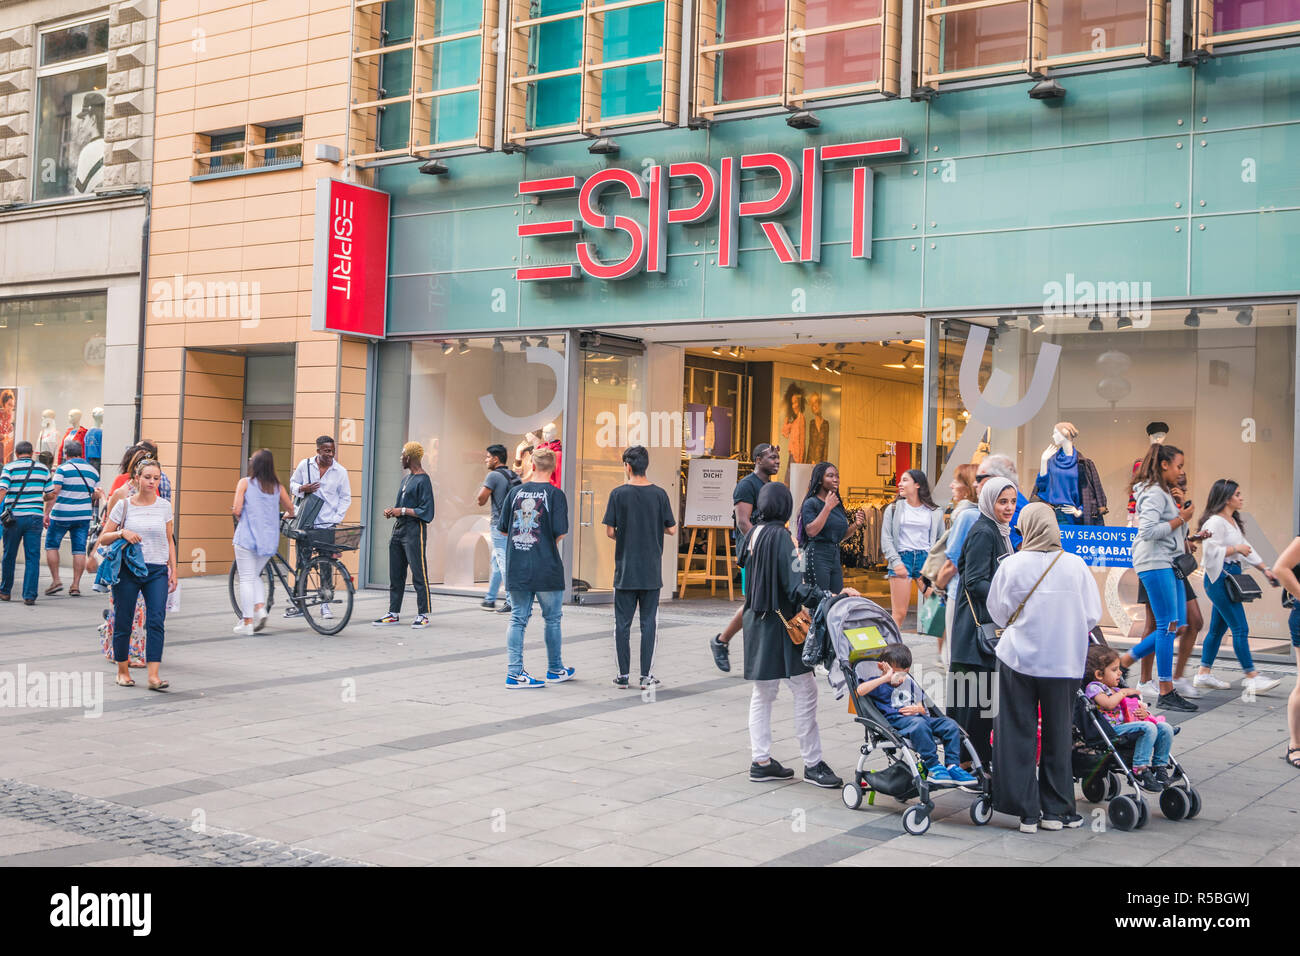 Esprit Fashion Shop Store Stockfotos Und Bilder Kaufen Alamy